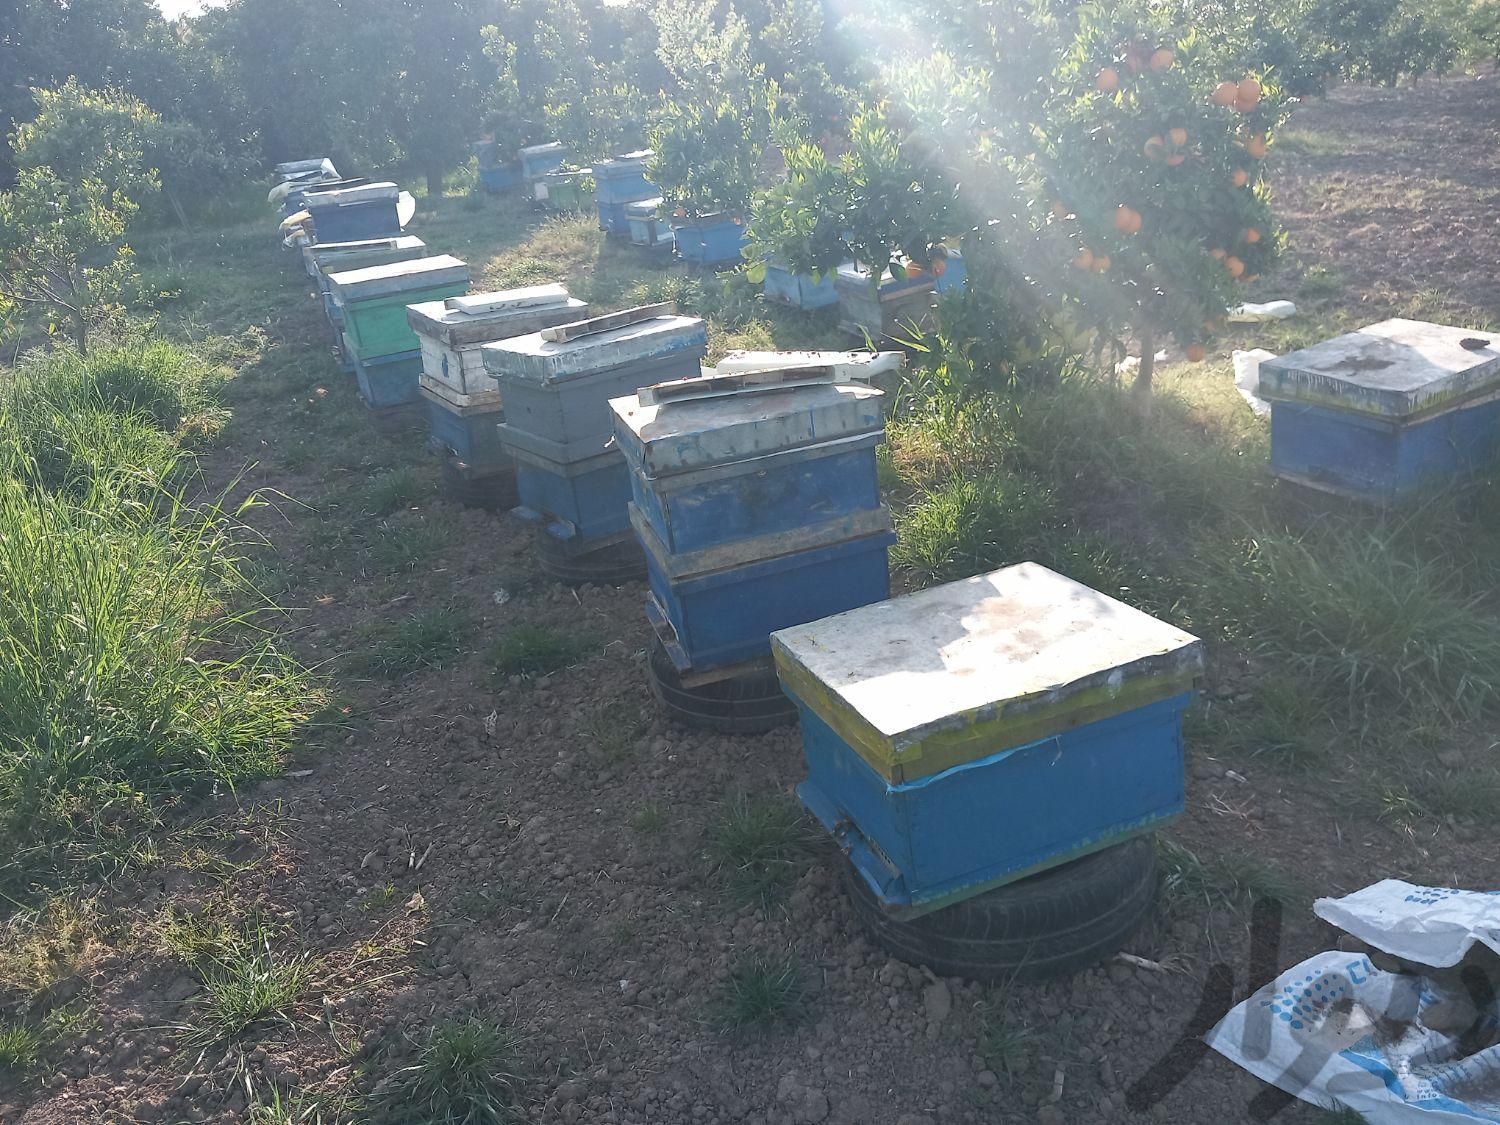 فروش ۲۰ کلنی زنبور|لوازم جانبی مربوط به حیوانات|نکا, |دیوار